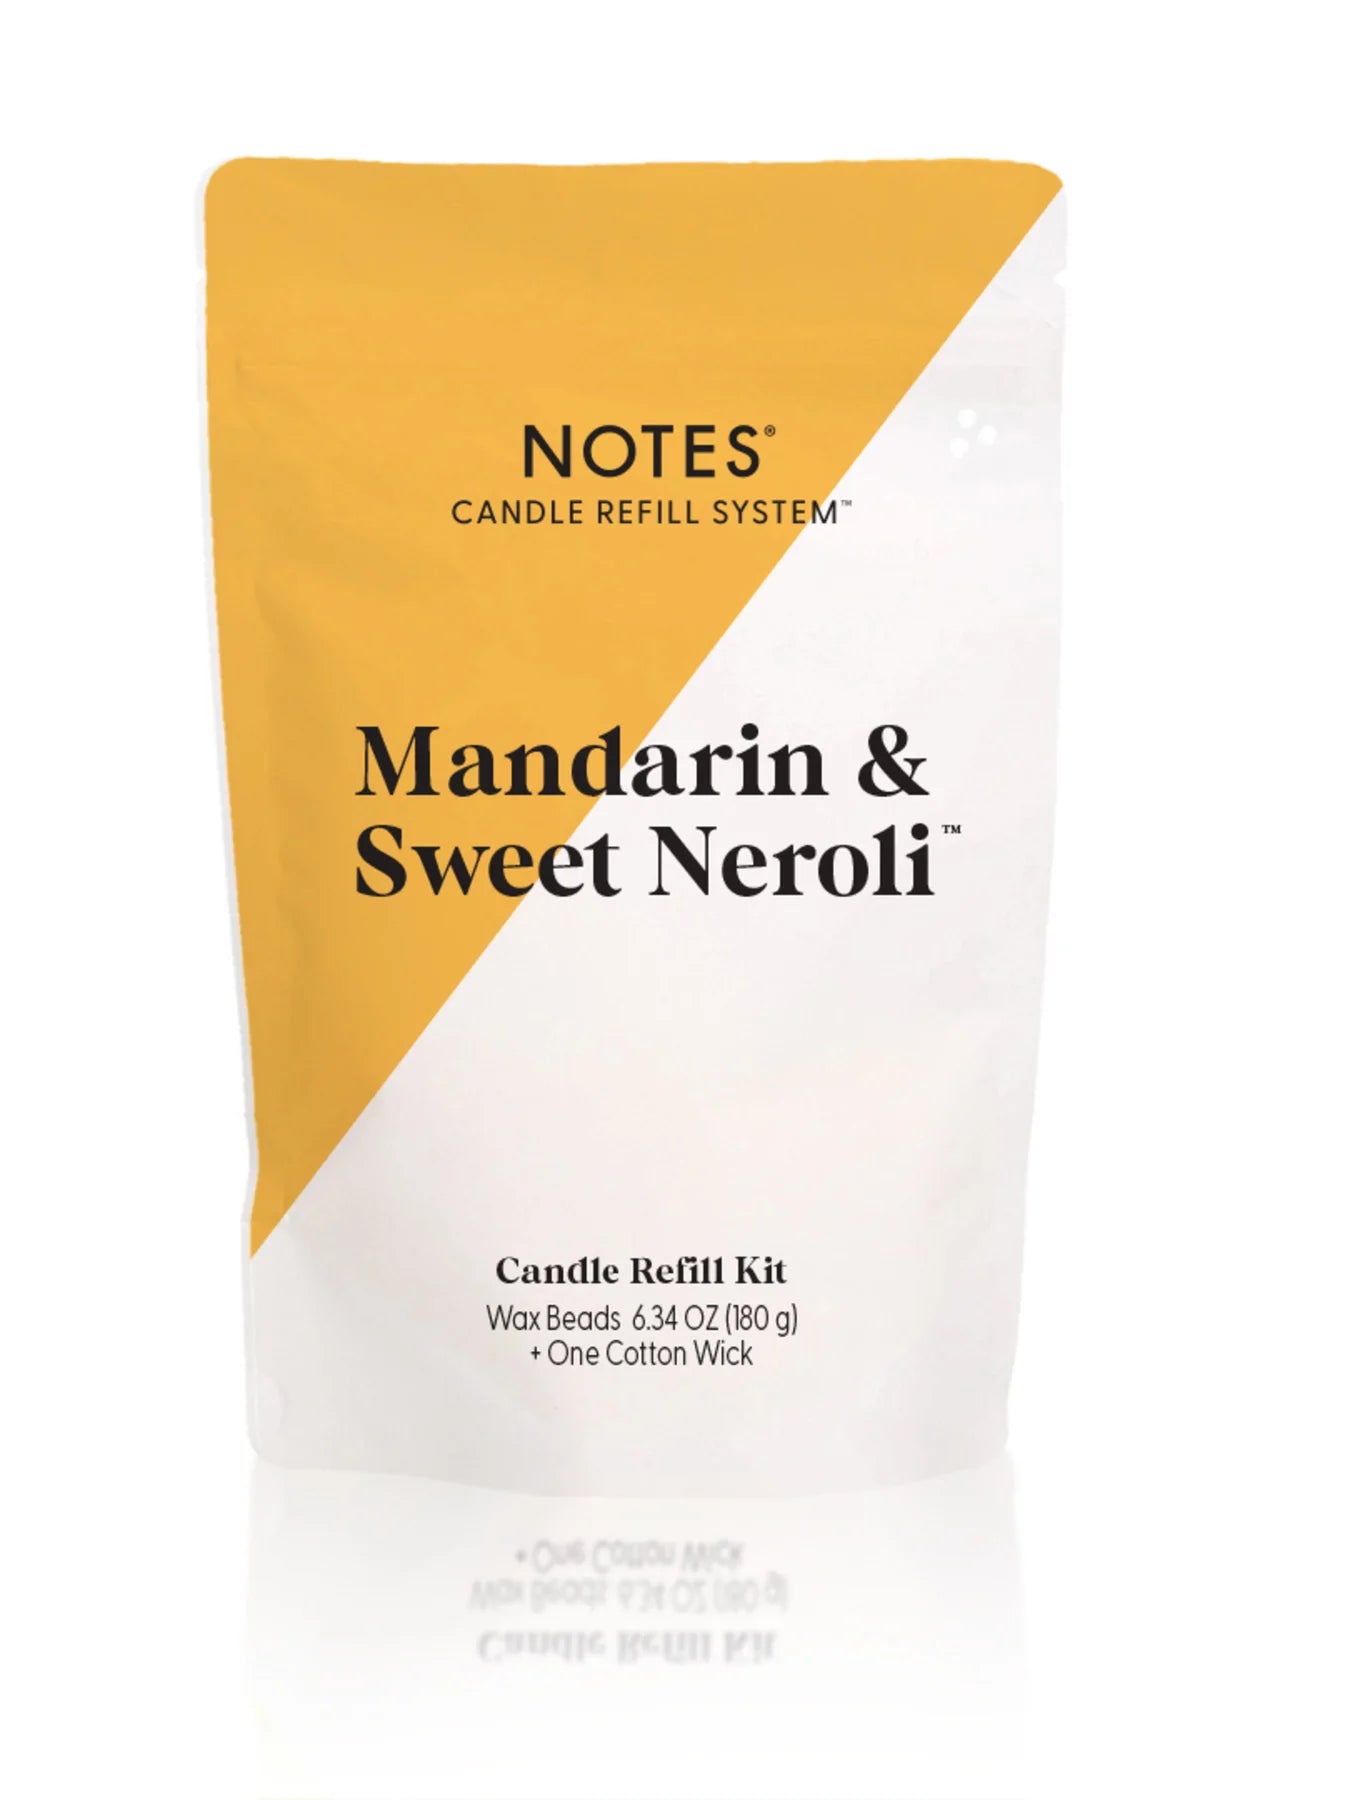 Notes Sustainable Candle Kit - Mandarin & Sweet Neroli